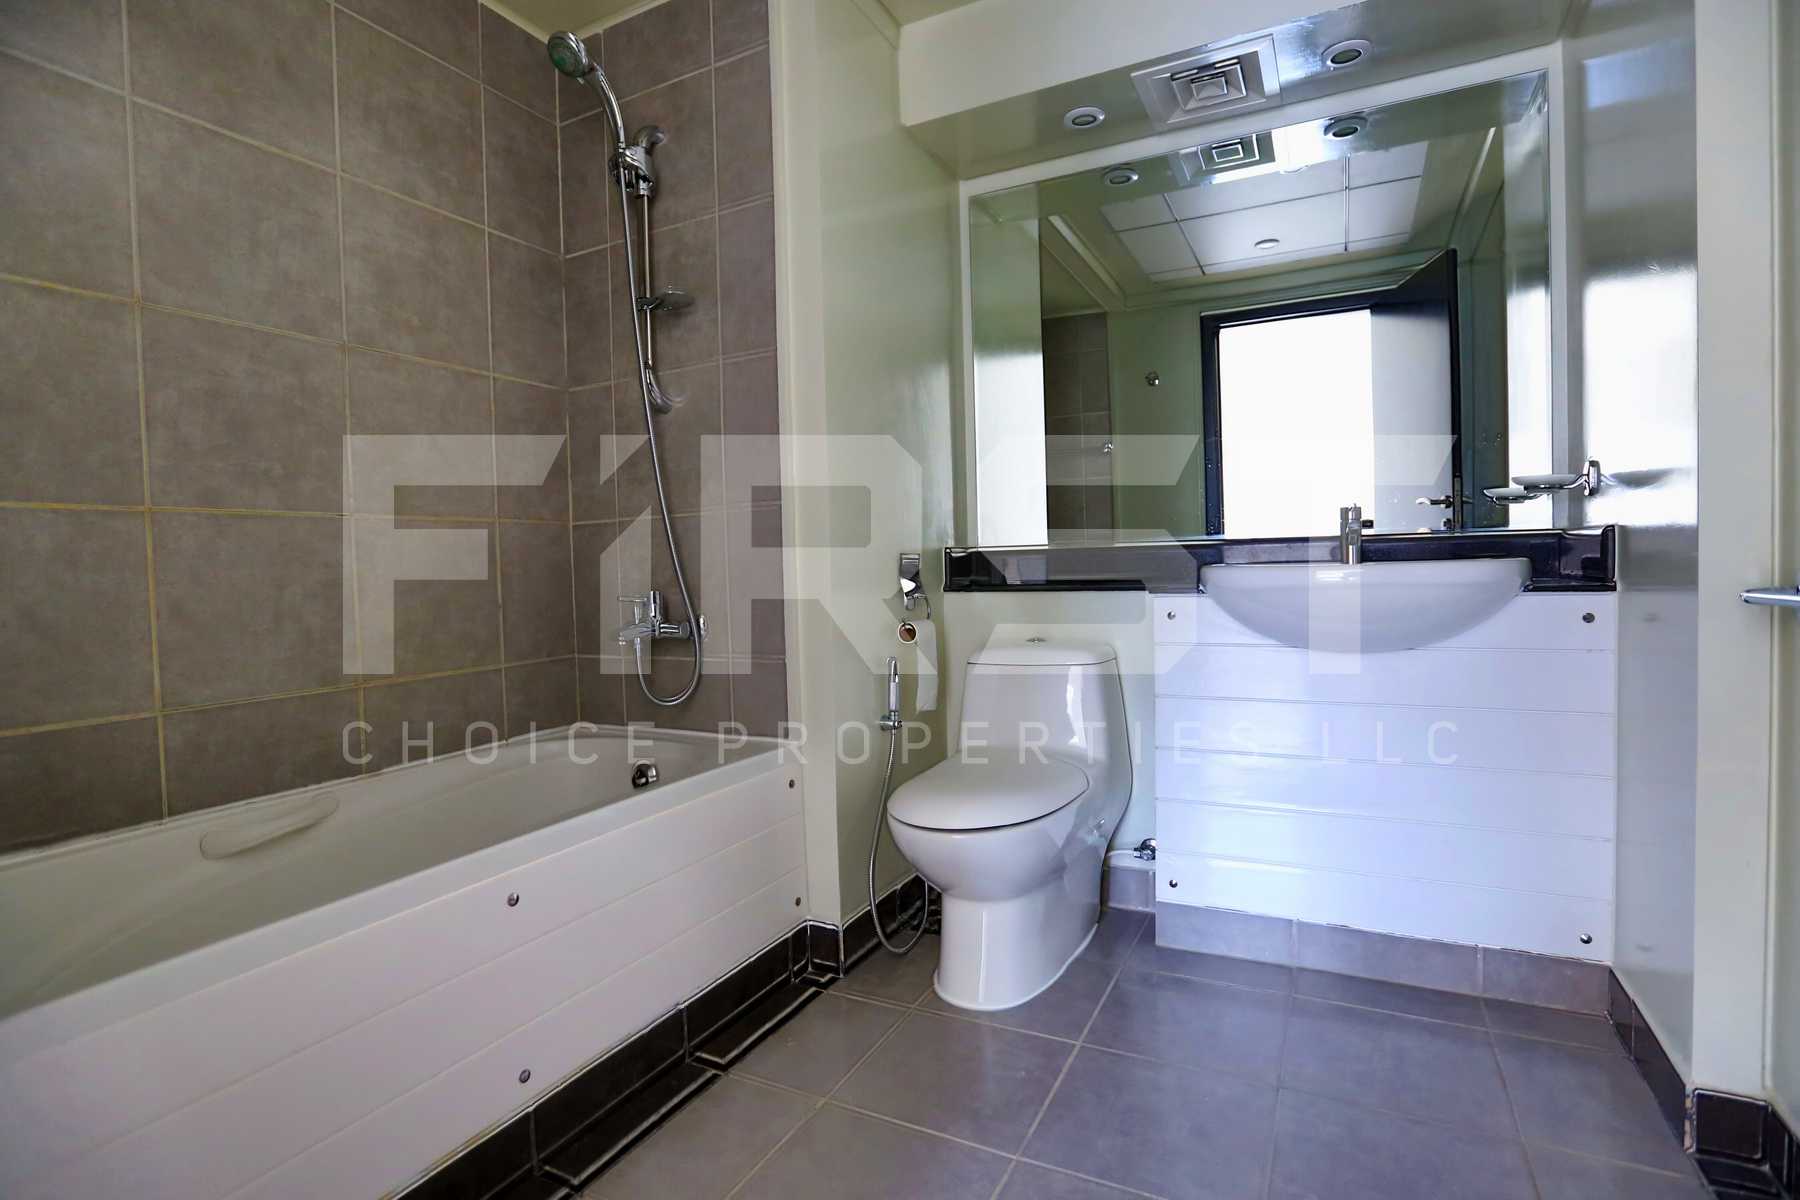 Internal Photo of 2 Bedroom Apartment Type B in Al Reef Downtown Al Reef Abu Dhabi UAE 114 sq.m 1227 (16) - Copy.jpg